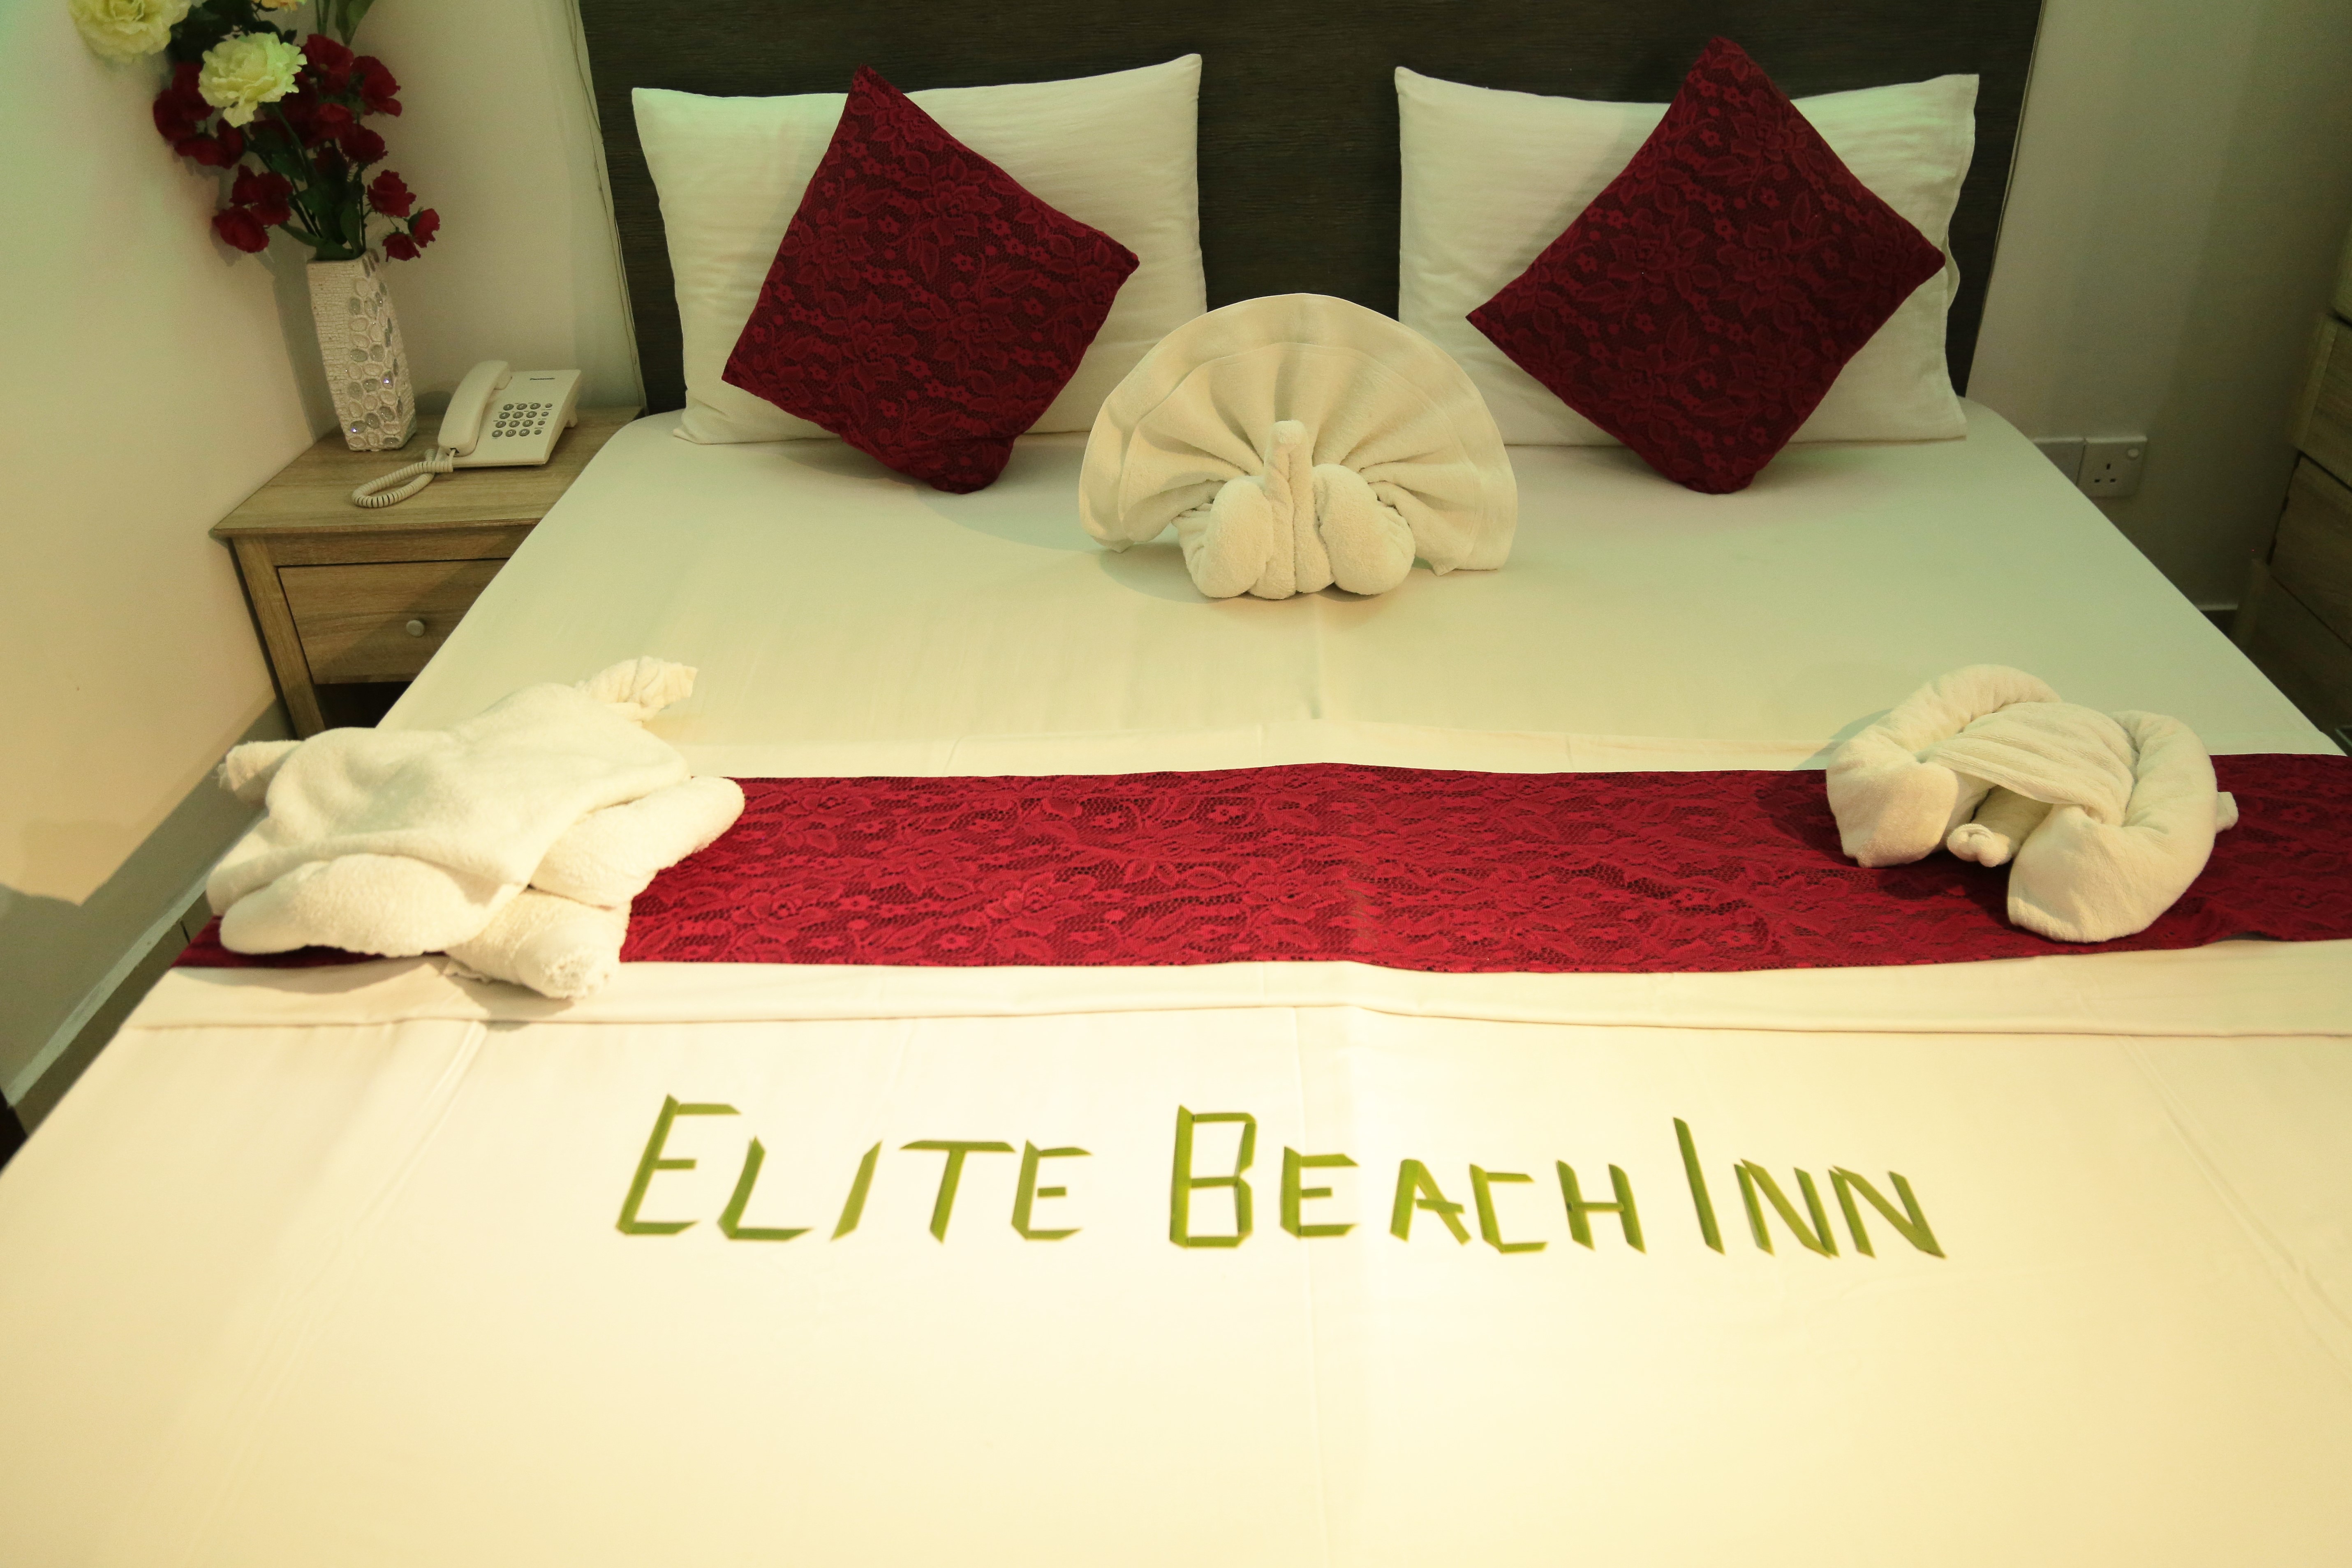 Elite Beach Inn